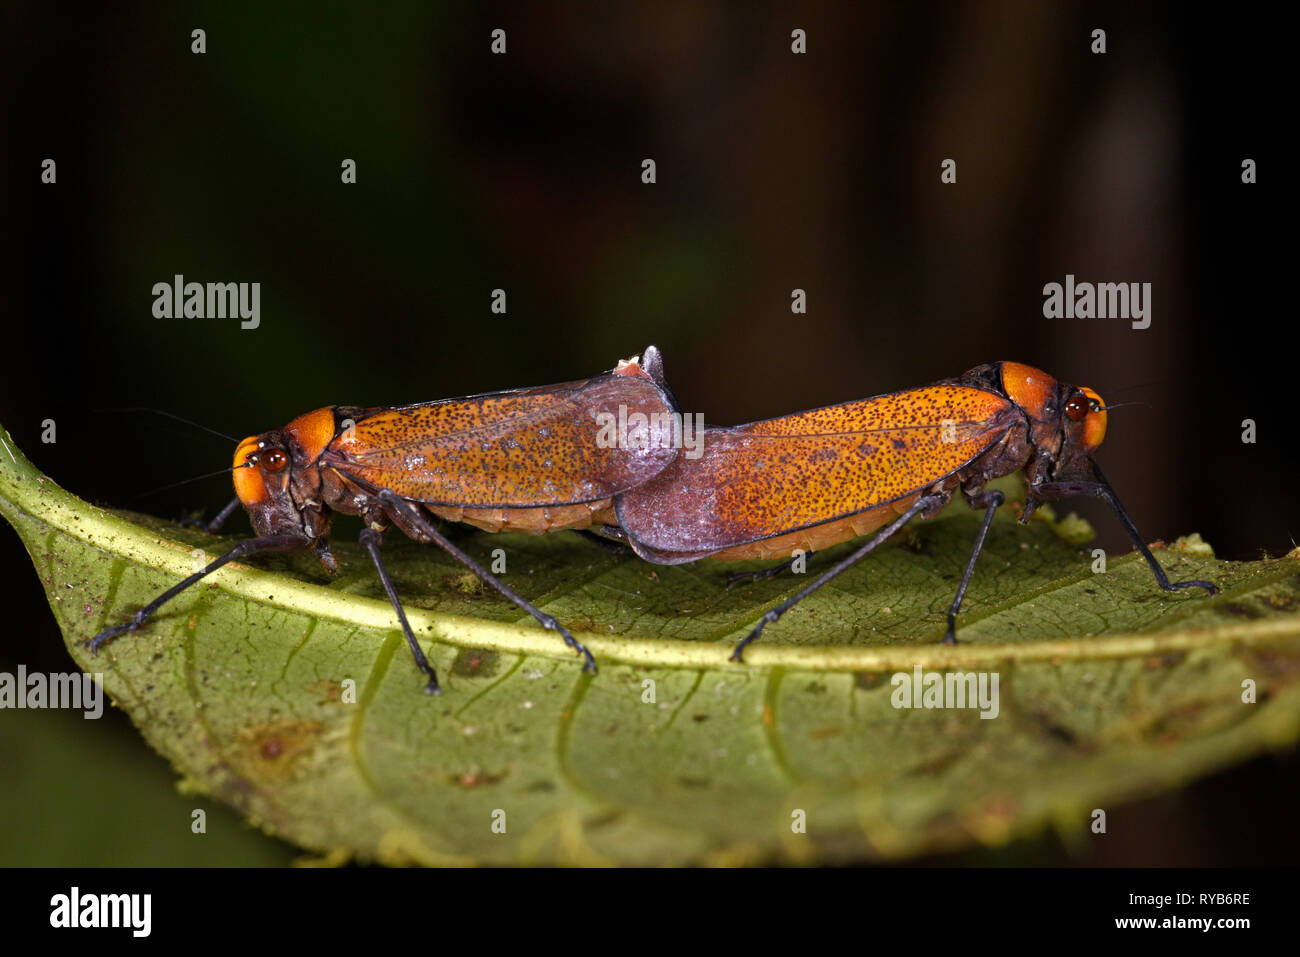 Leafhopper arancione, coppia coniugata sul retro della foglia, Parco Nazionale del Manu, Perù, Novembre Foto Stock